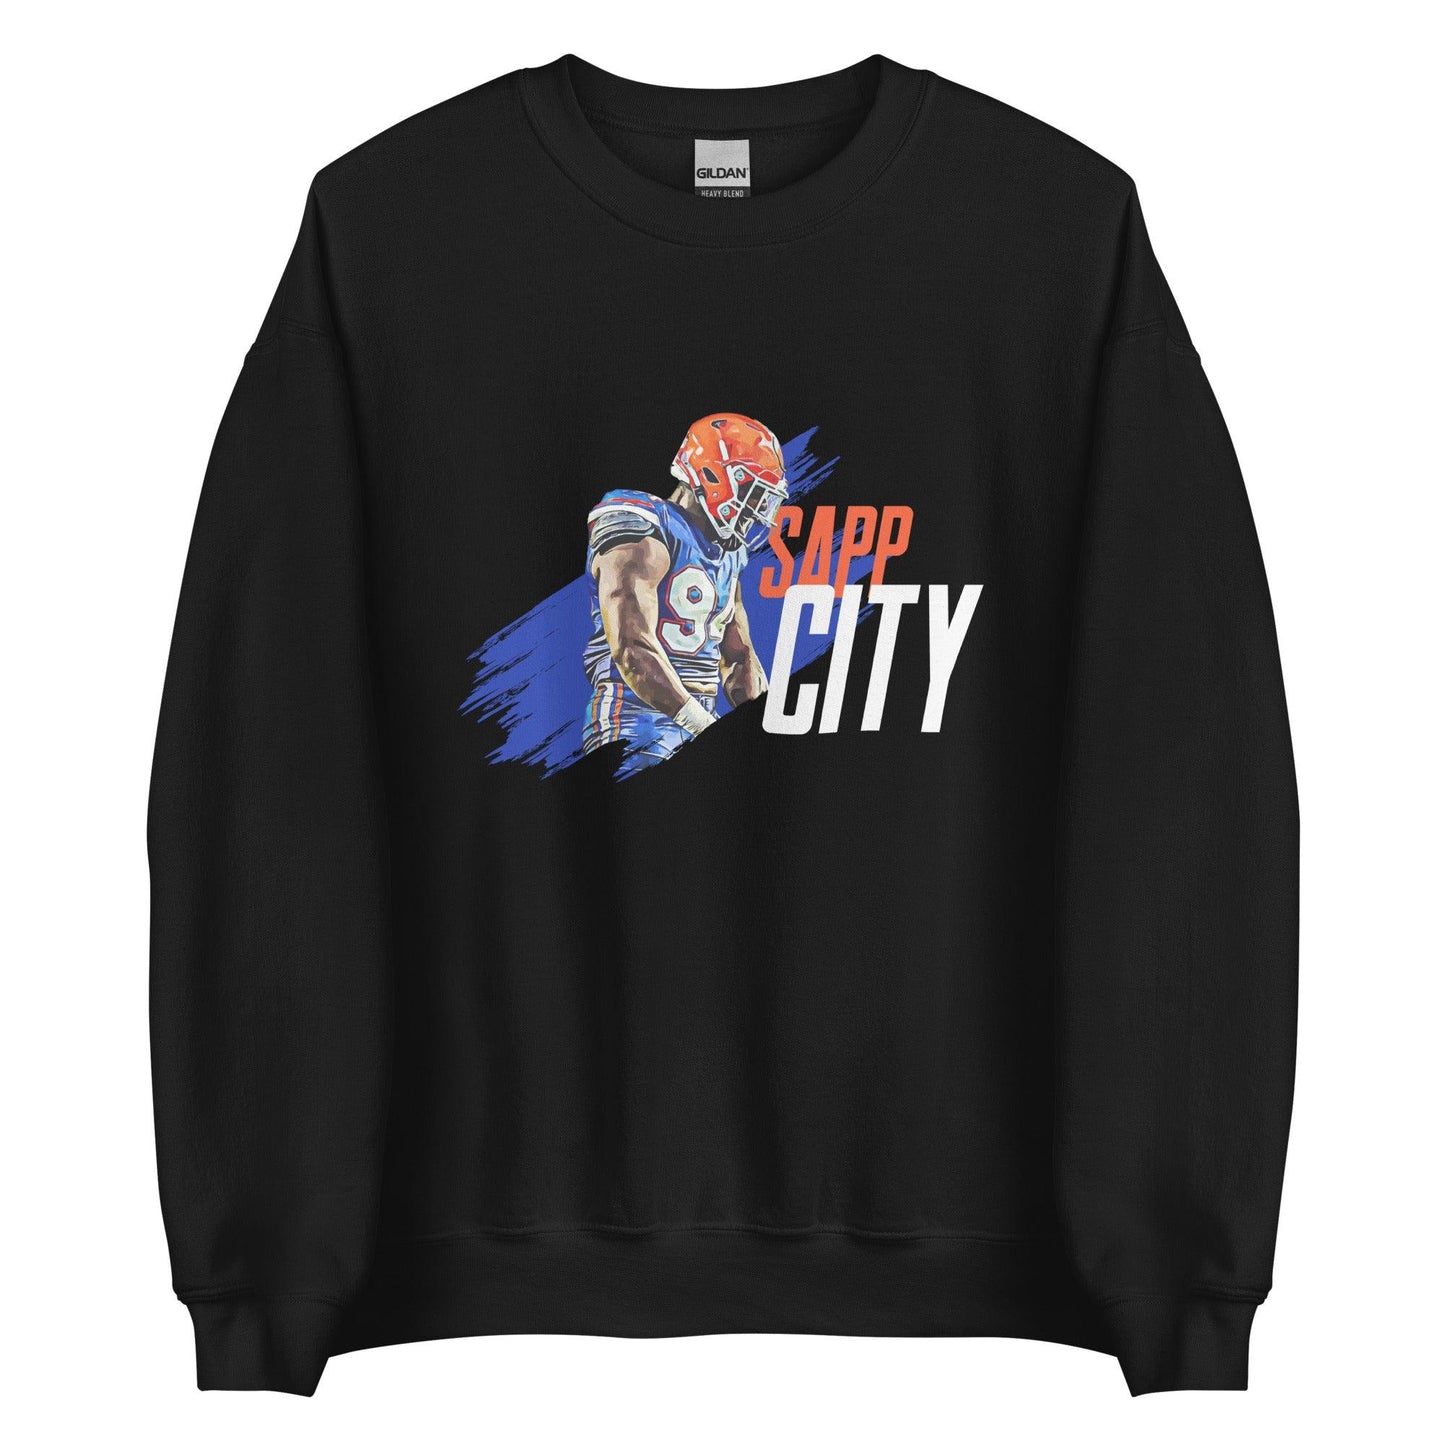 Tyreak Sapp "Sapp City" Sweatshirt - Fan Arch